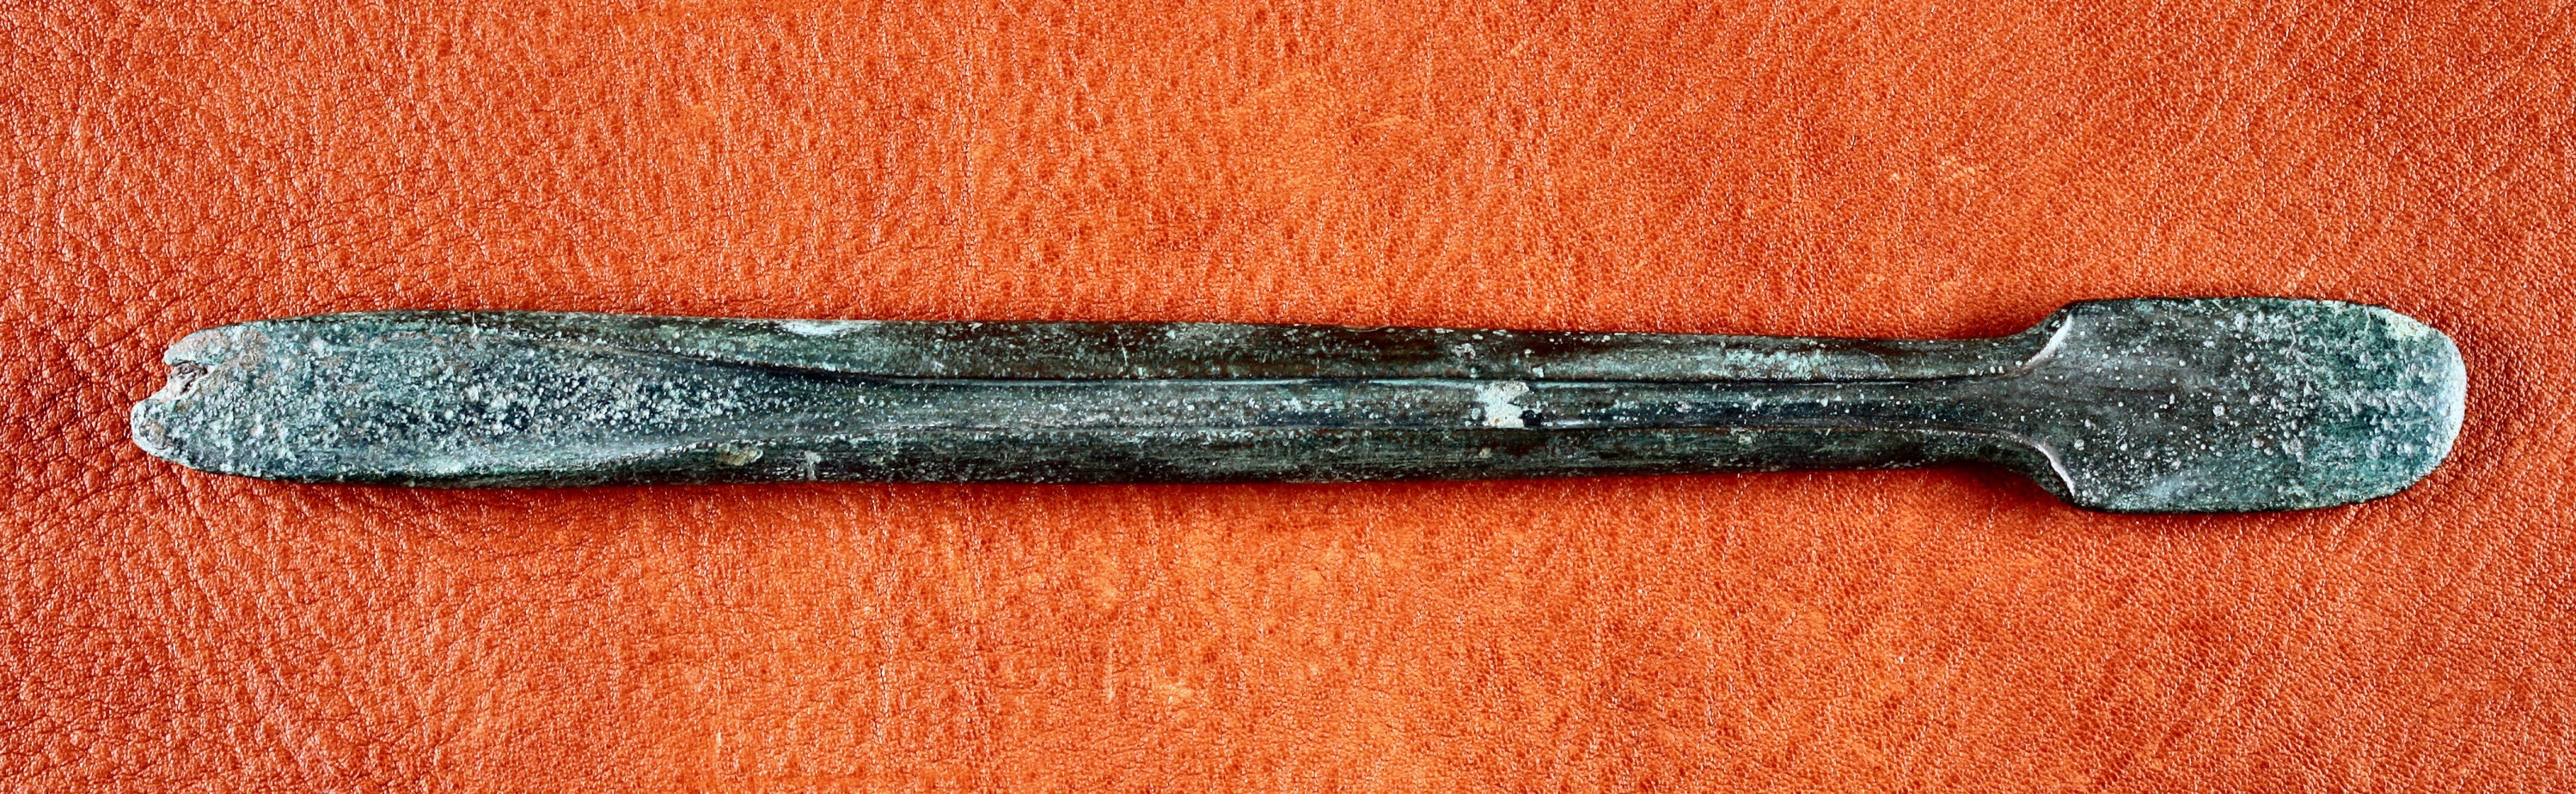 Löffelbeil aus dem Hortfund von Kläden (Johann-Friedrich-Danneil-Museum Salzwedel CC BY-NC-SA)